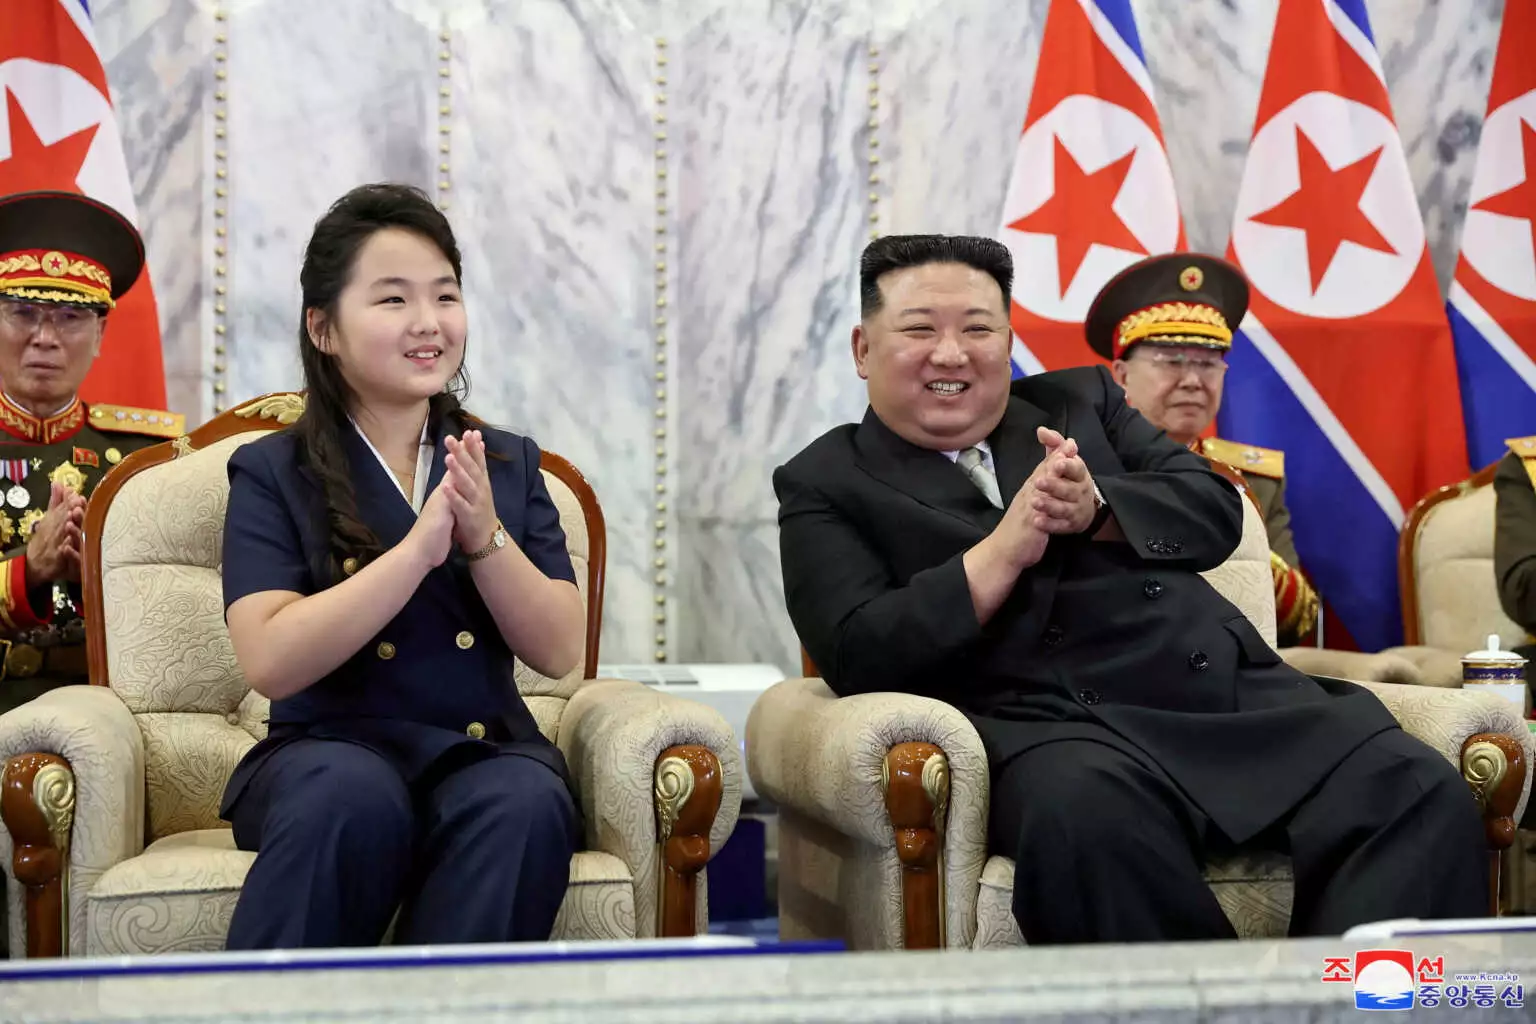 Β.Κορέα: Ο Κιμ Γιονγκ Ουν παρακολούθησε τη στρατιωτική παρέλαση για την εθνική επέτειο μαζί με την κόρη του (φώτο)